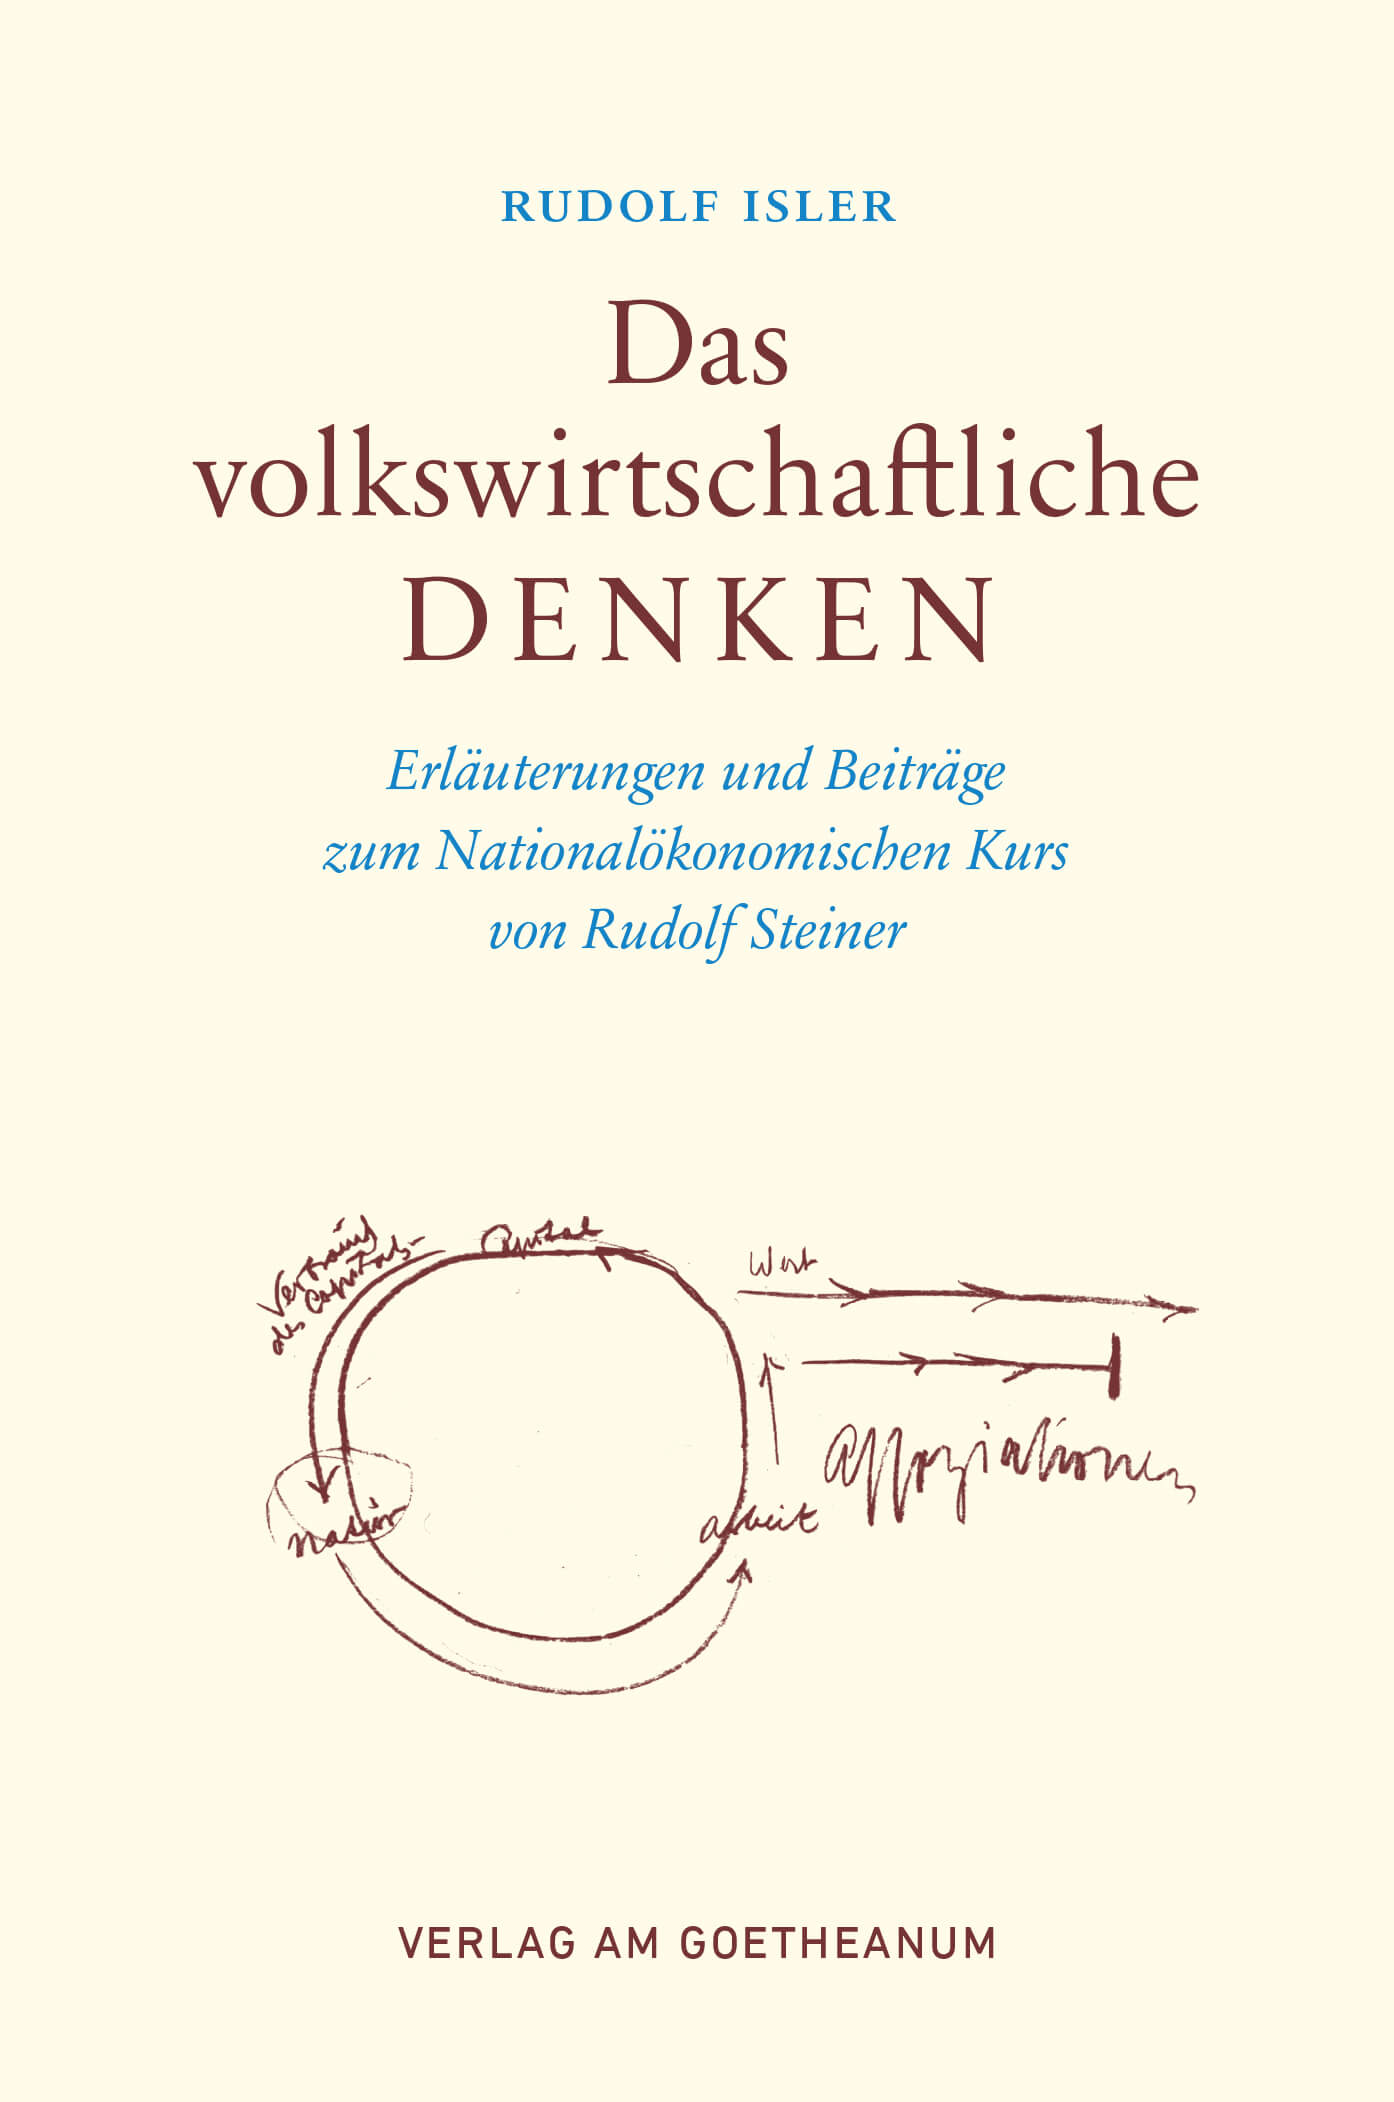 Verlag am Goetheanum-Rudolf Isler-Das volkswirtschaftliche Denken